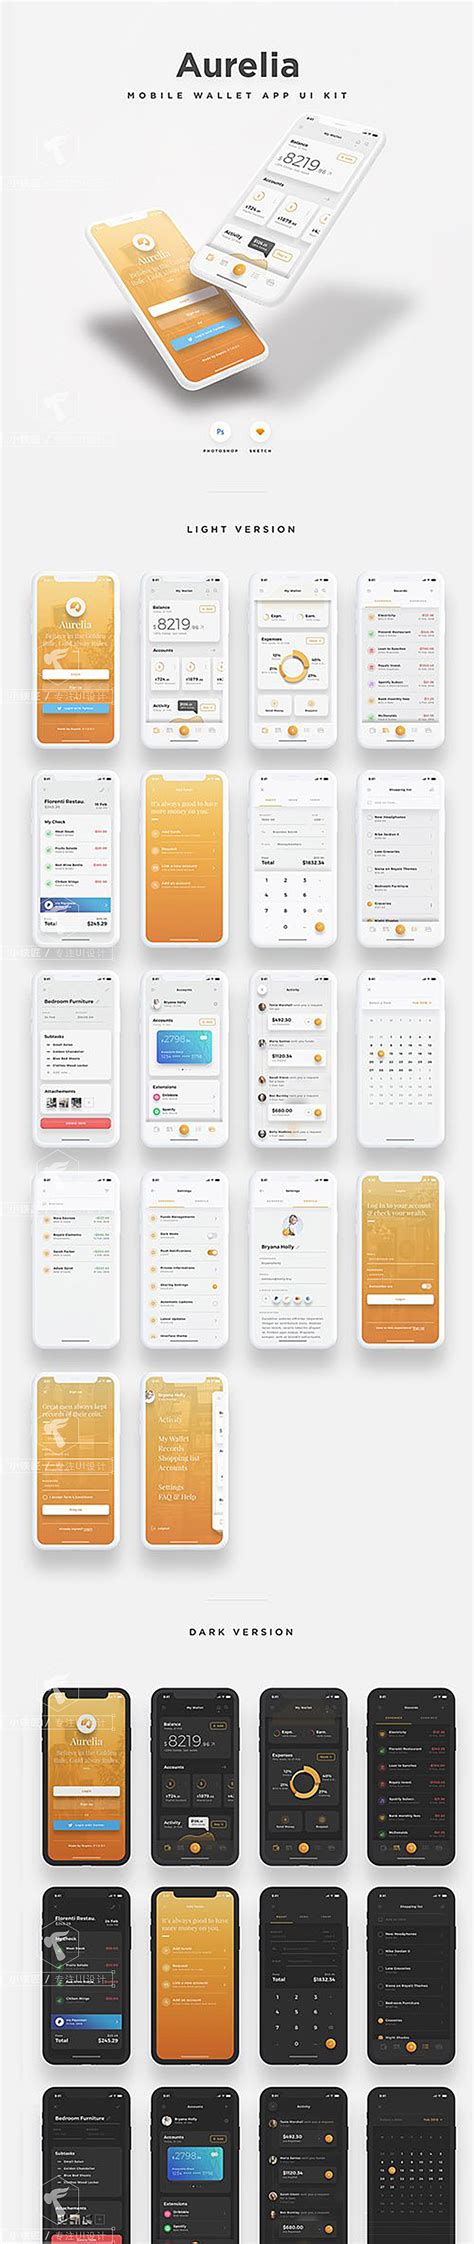 手机银行财务金融iOS app UI Kit设计模板-E-Bank - 25学堂